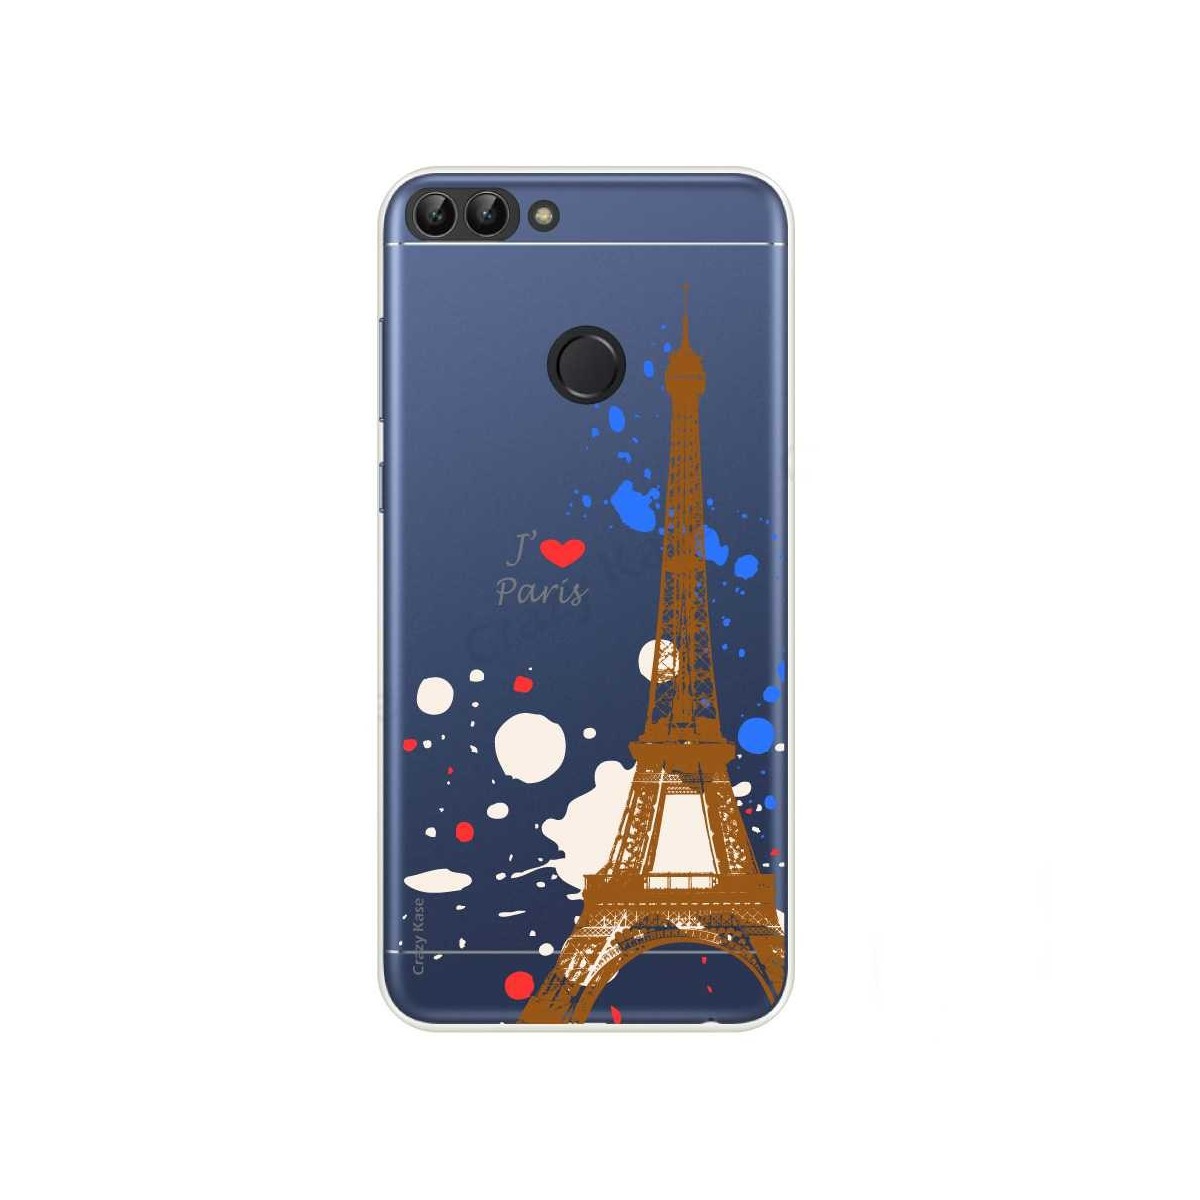 Coque Huawei P Smart  2018 souple Paris - Crazy Kase